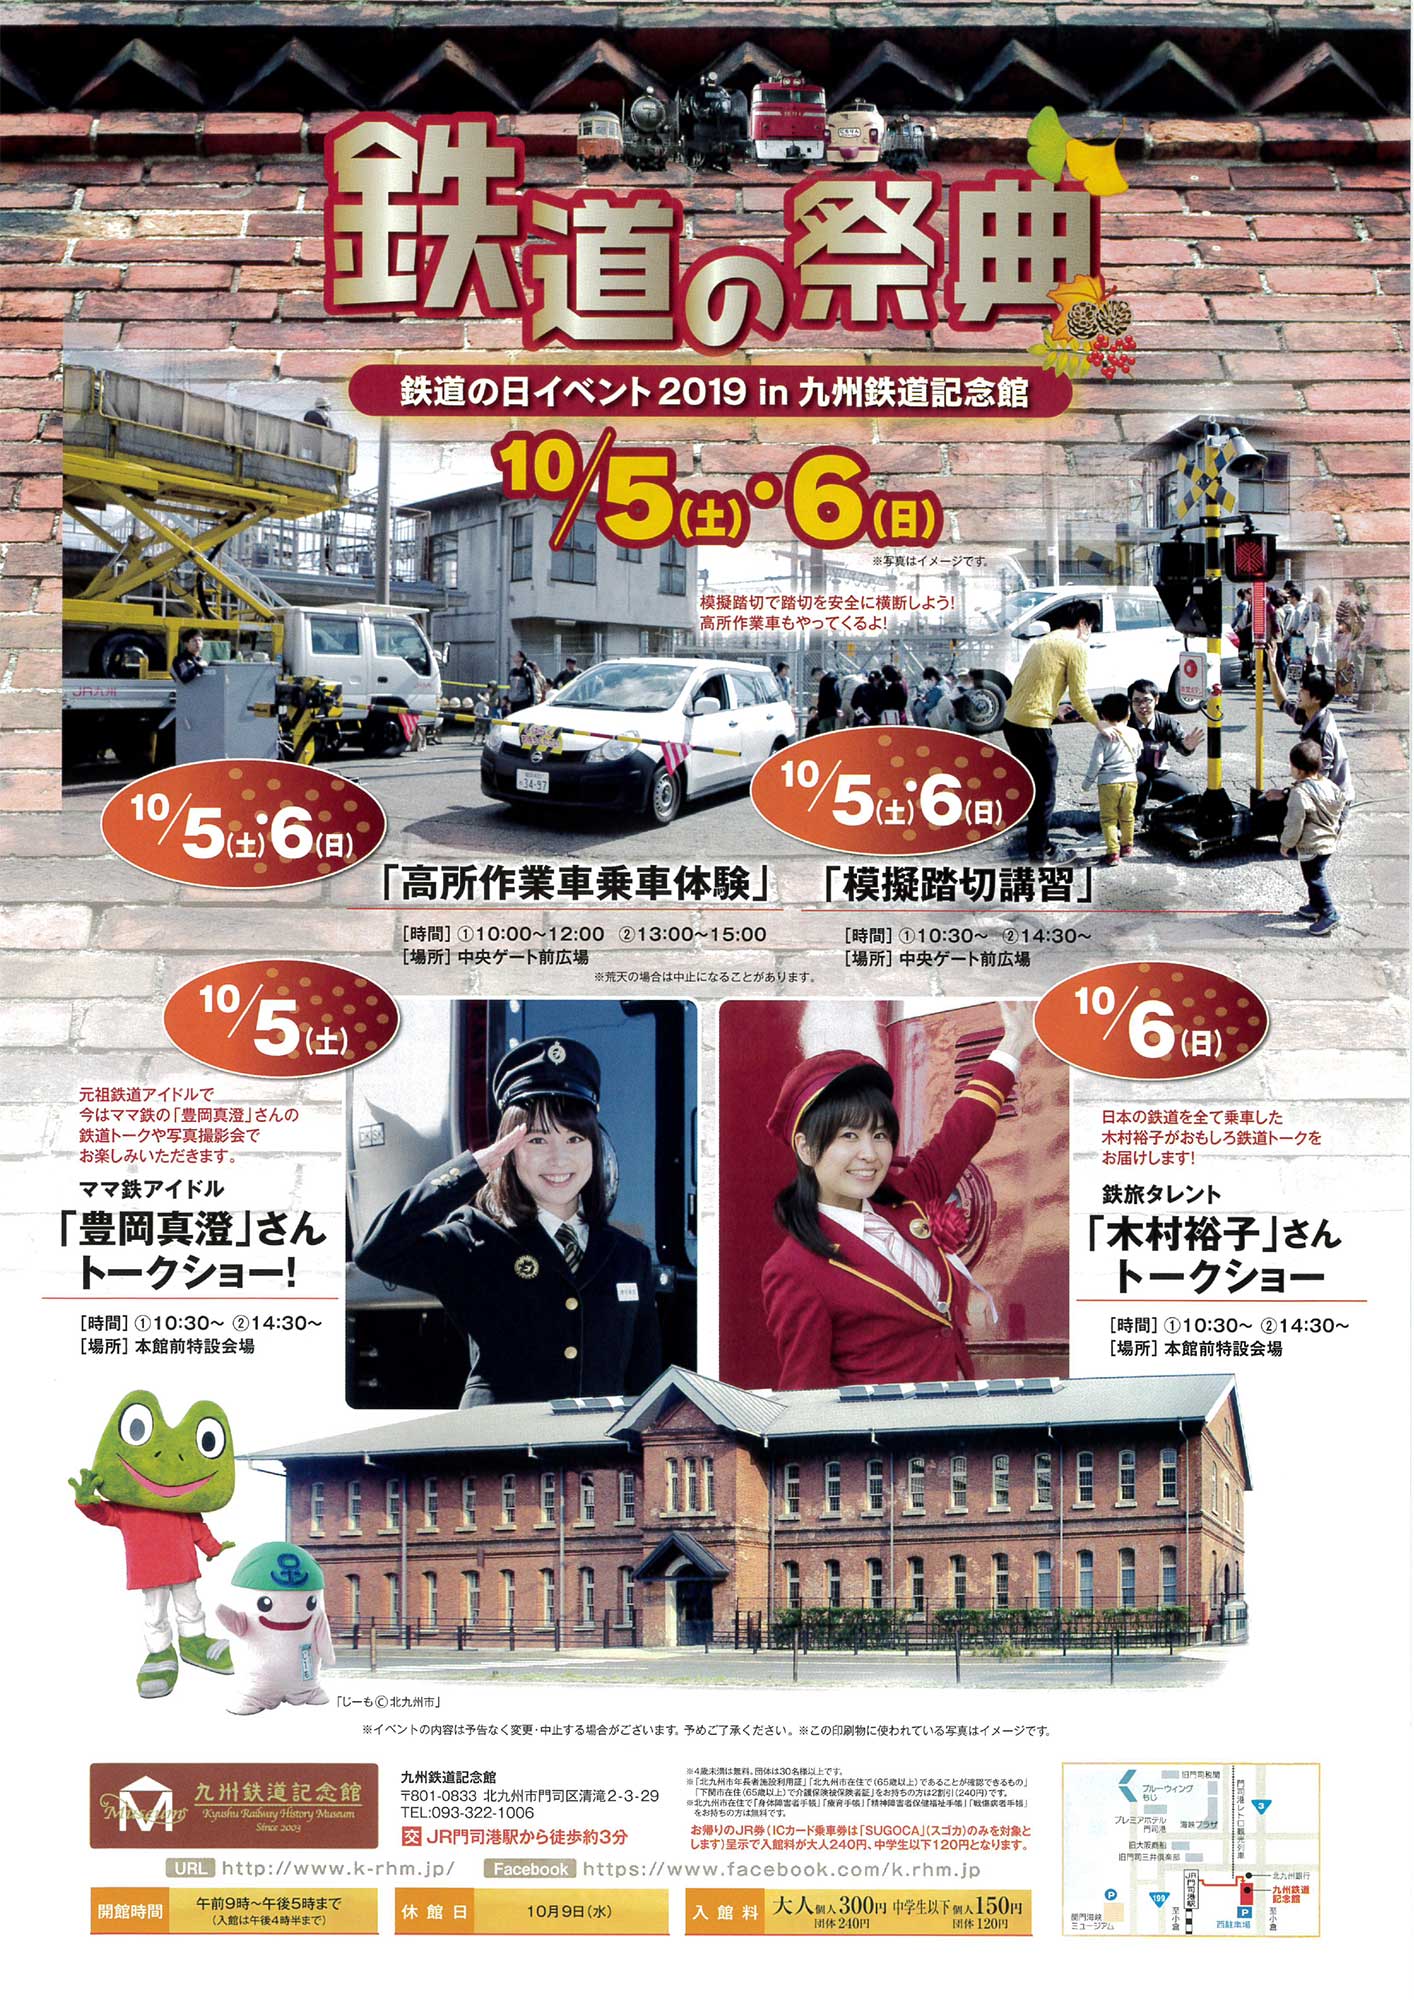 鉄道の祭典 鉄道の日イベント2019 in 九州鉄道記念館